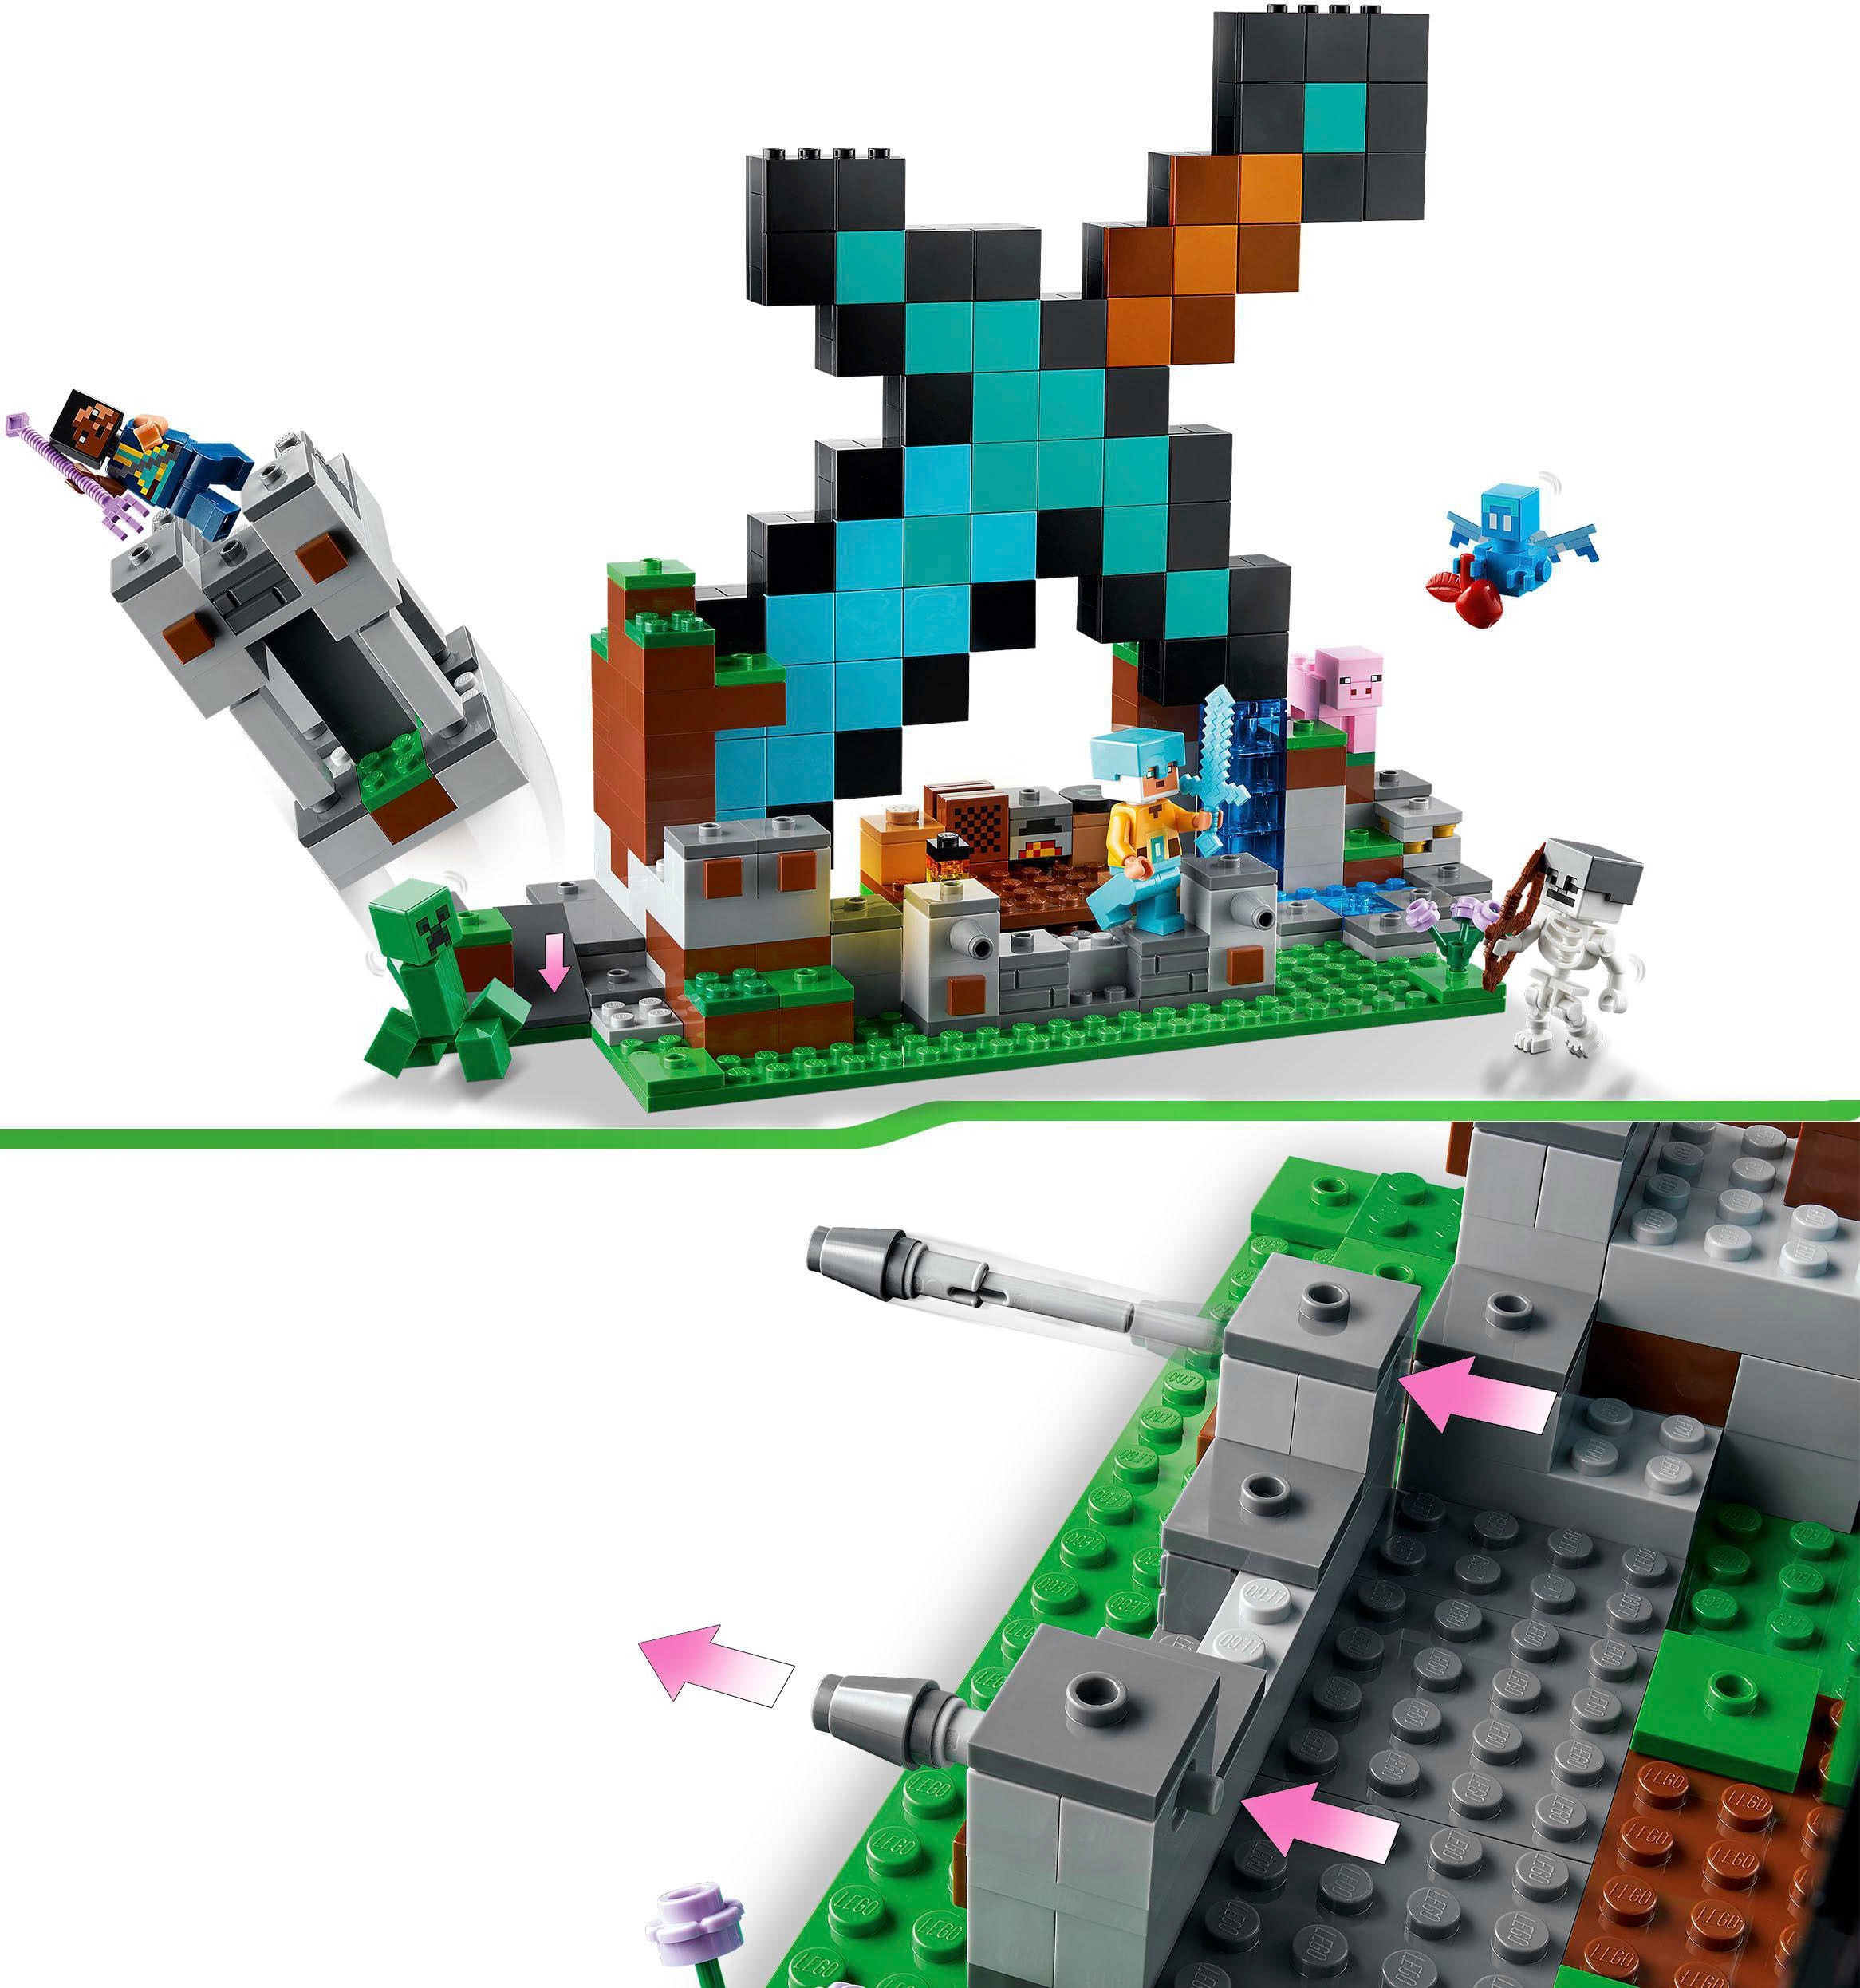 LEGO® Konstruktionsspielsteine »Der Schwert-Aussenposten (21244), LEGO® Minecraft«, (427 St.), Made in Europe